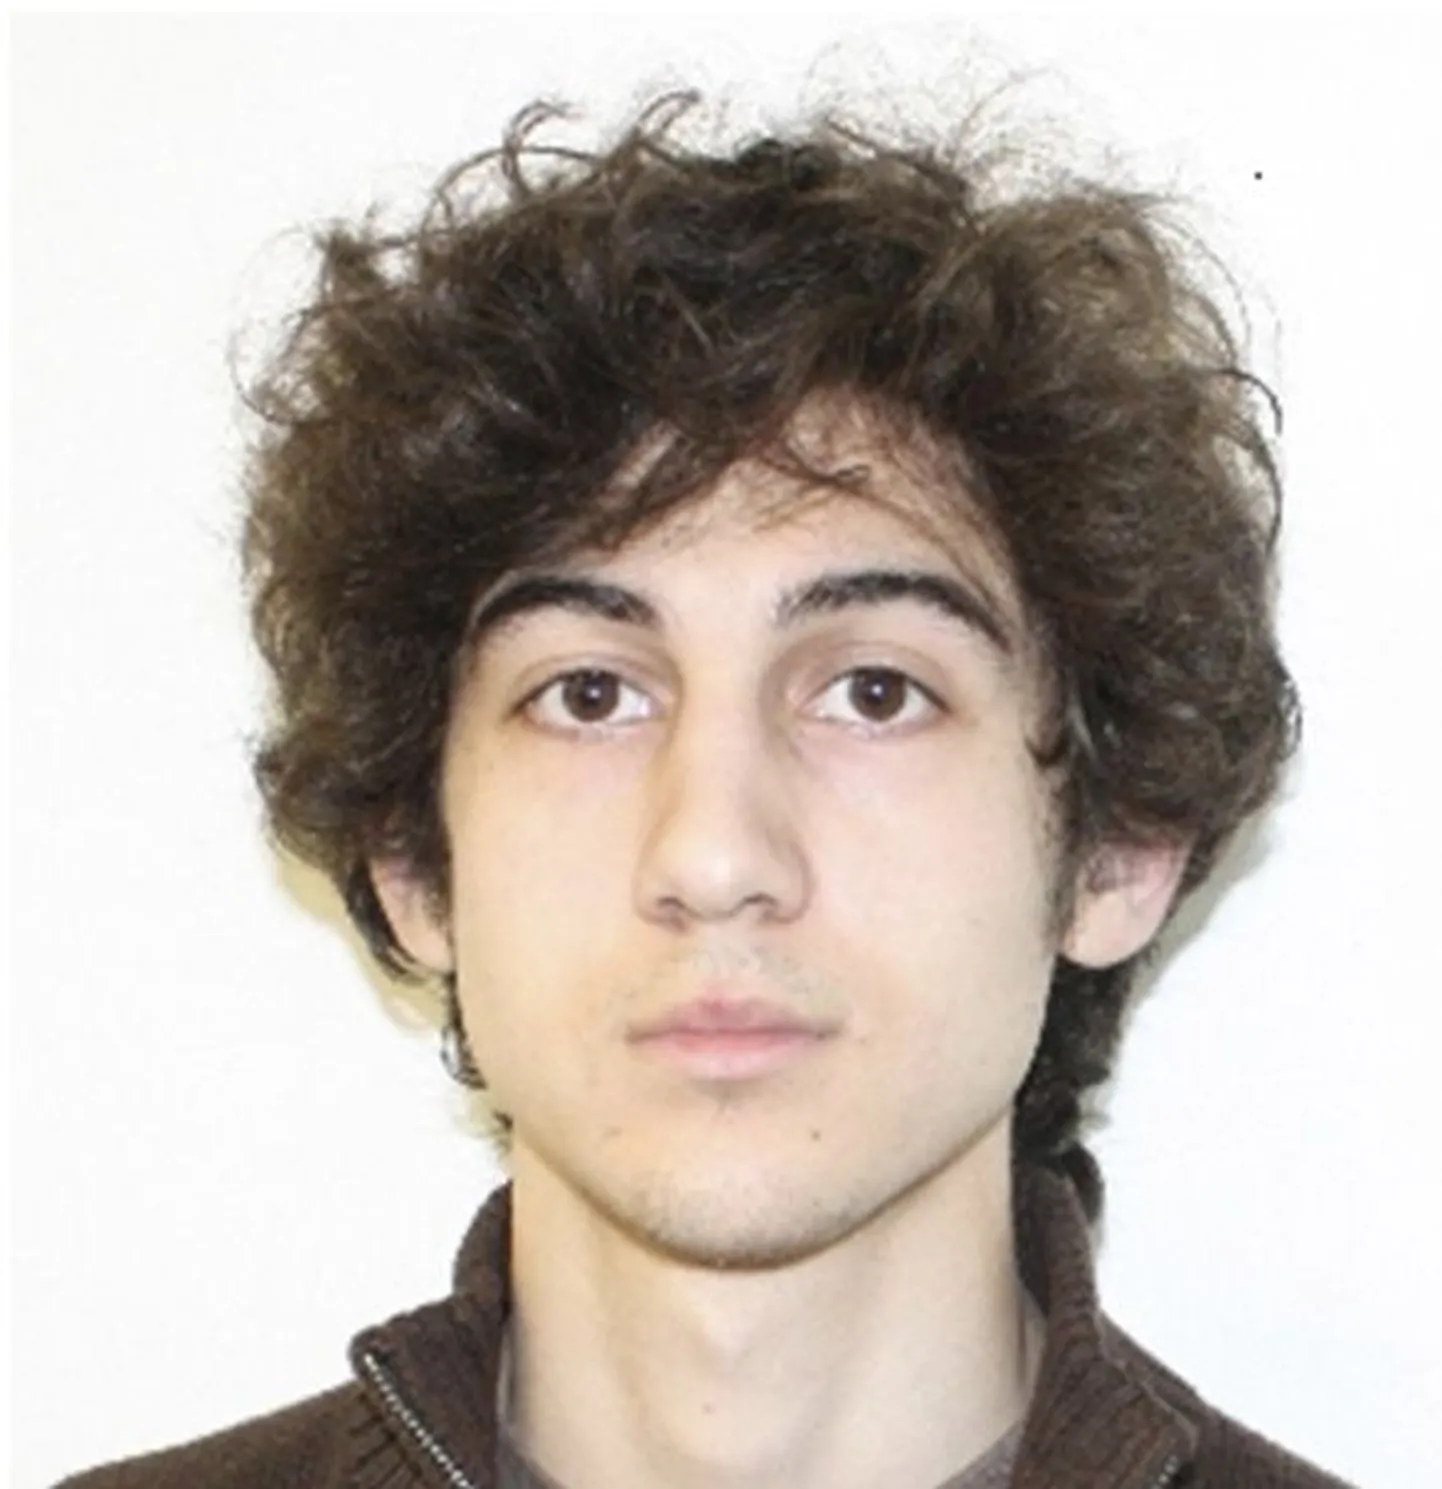 Džohhar Tsarnaev